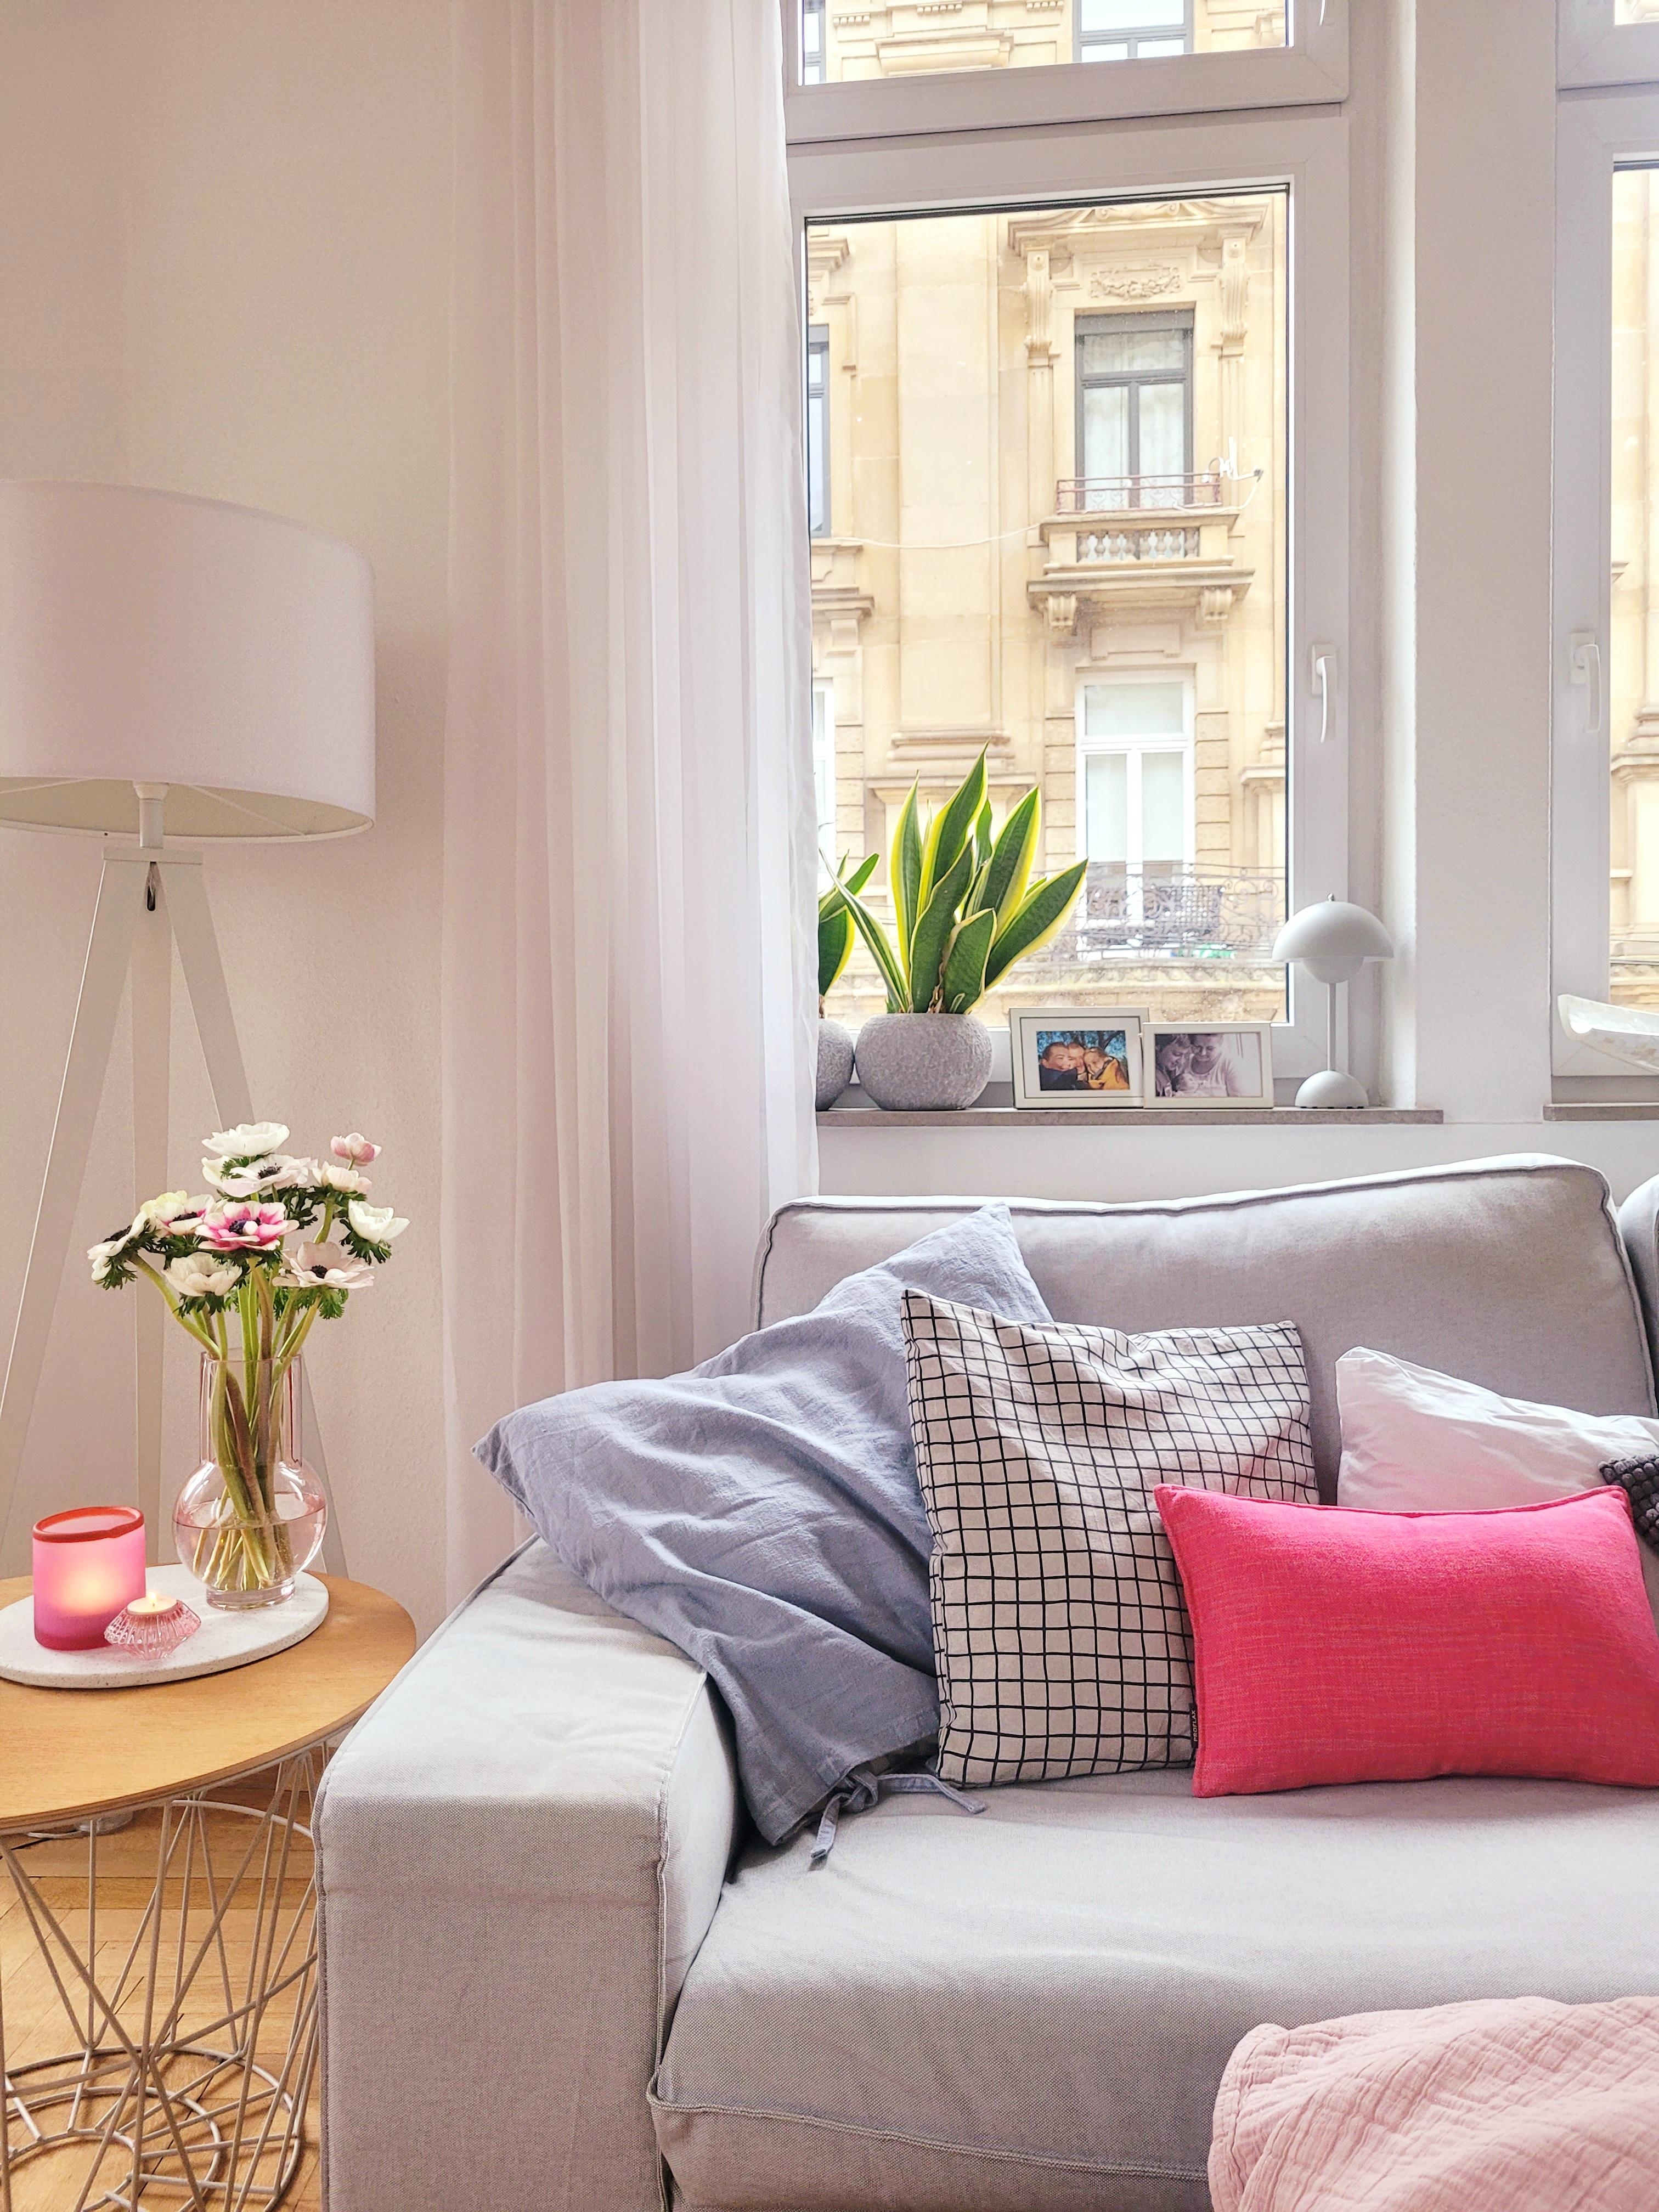 Bunt starten wir heute zum fasching 🎊 
#Wohnzimmer 
#Altbau 
#Sofa
#Tisch
#Lampe 
#pink
#Kissen
#blumen 
#Schale
#Ikea
#hkliving 
#Vase
#ferm living 
